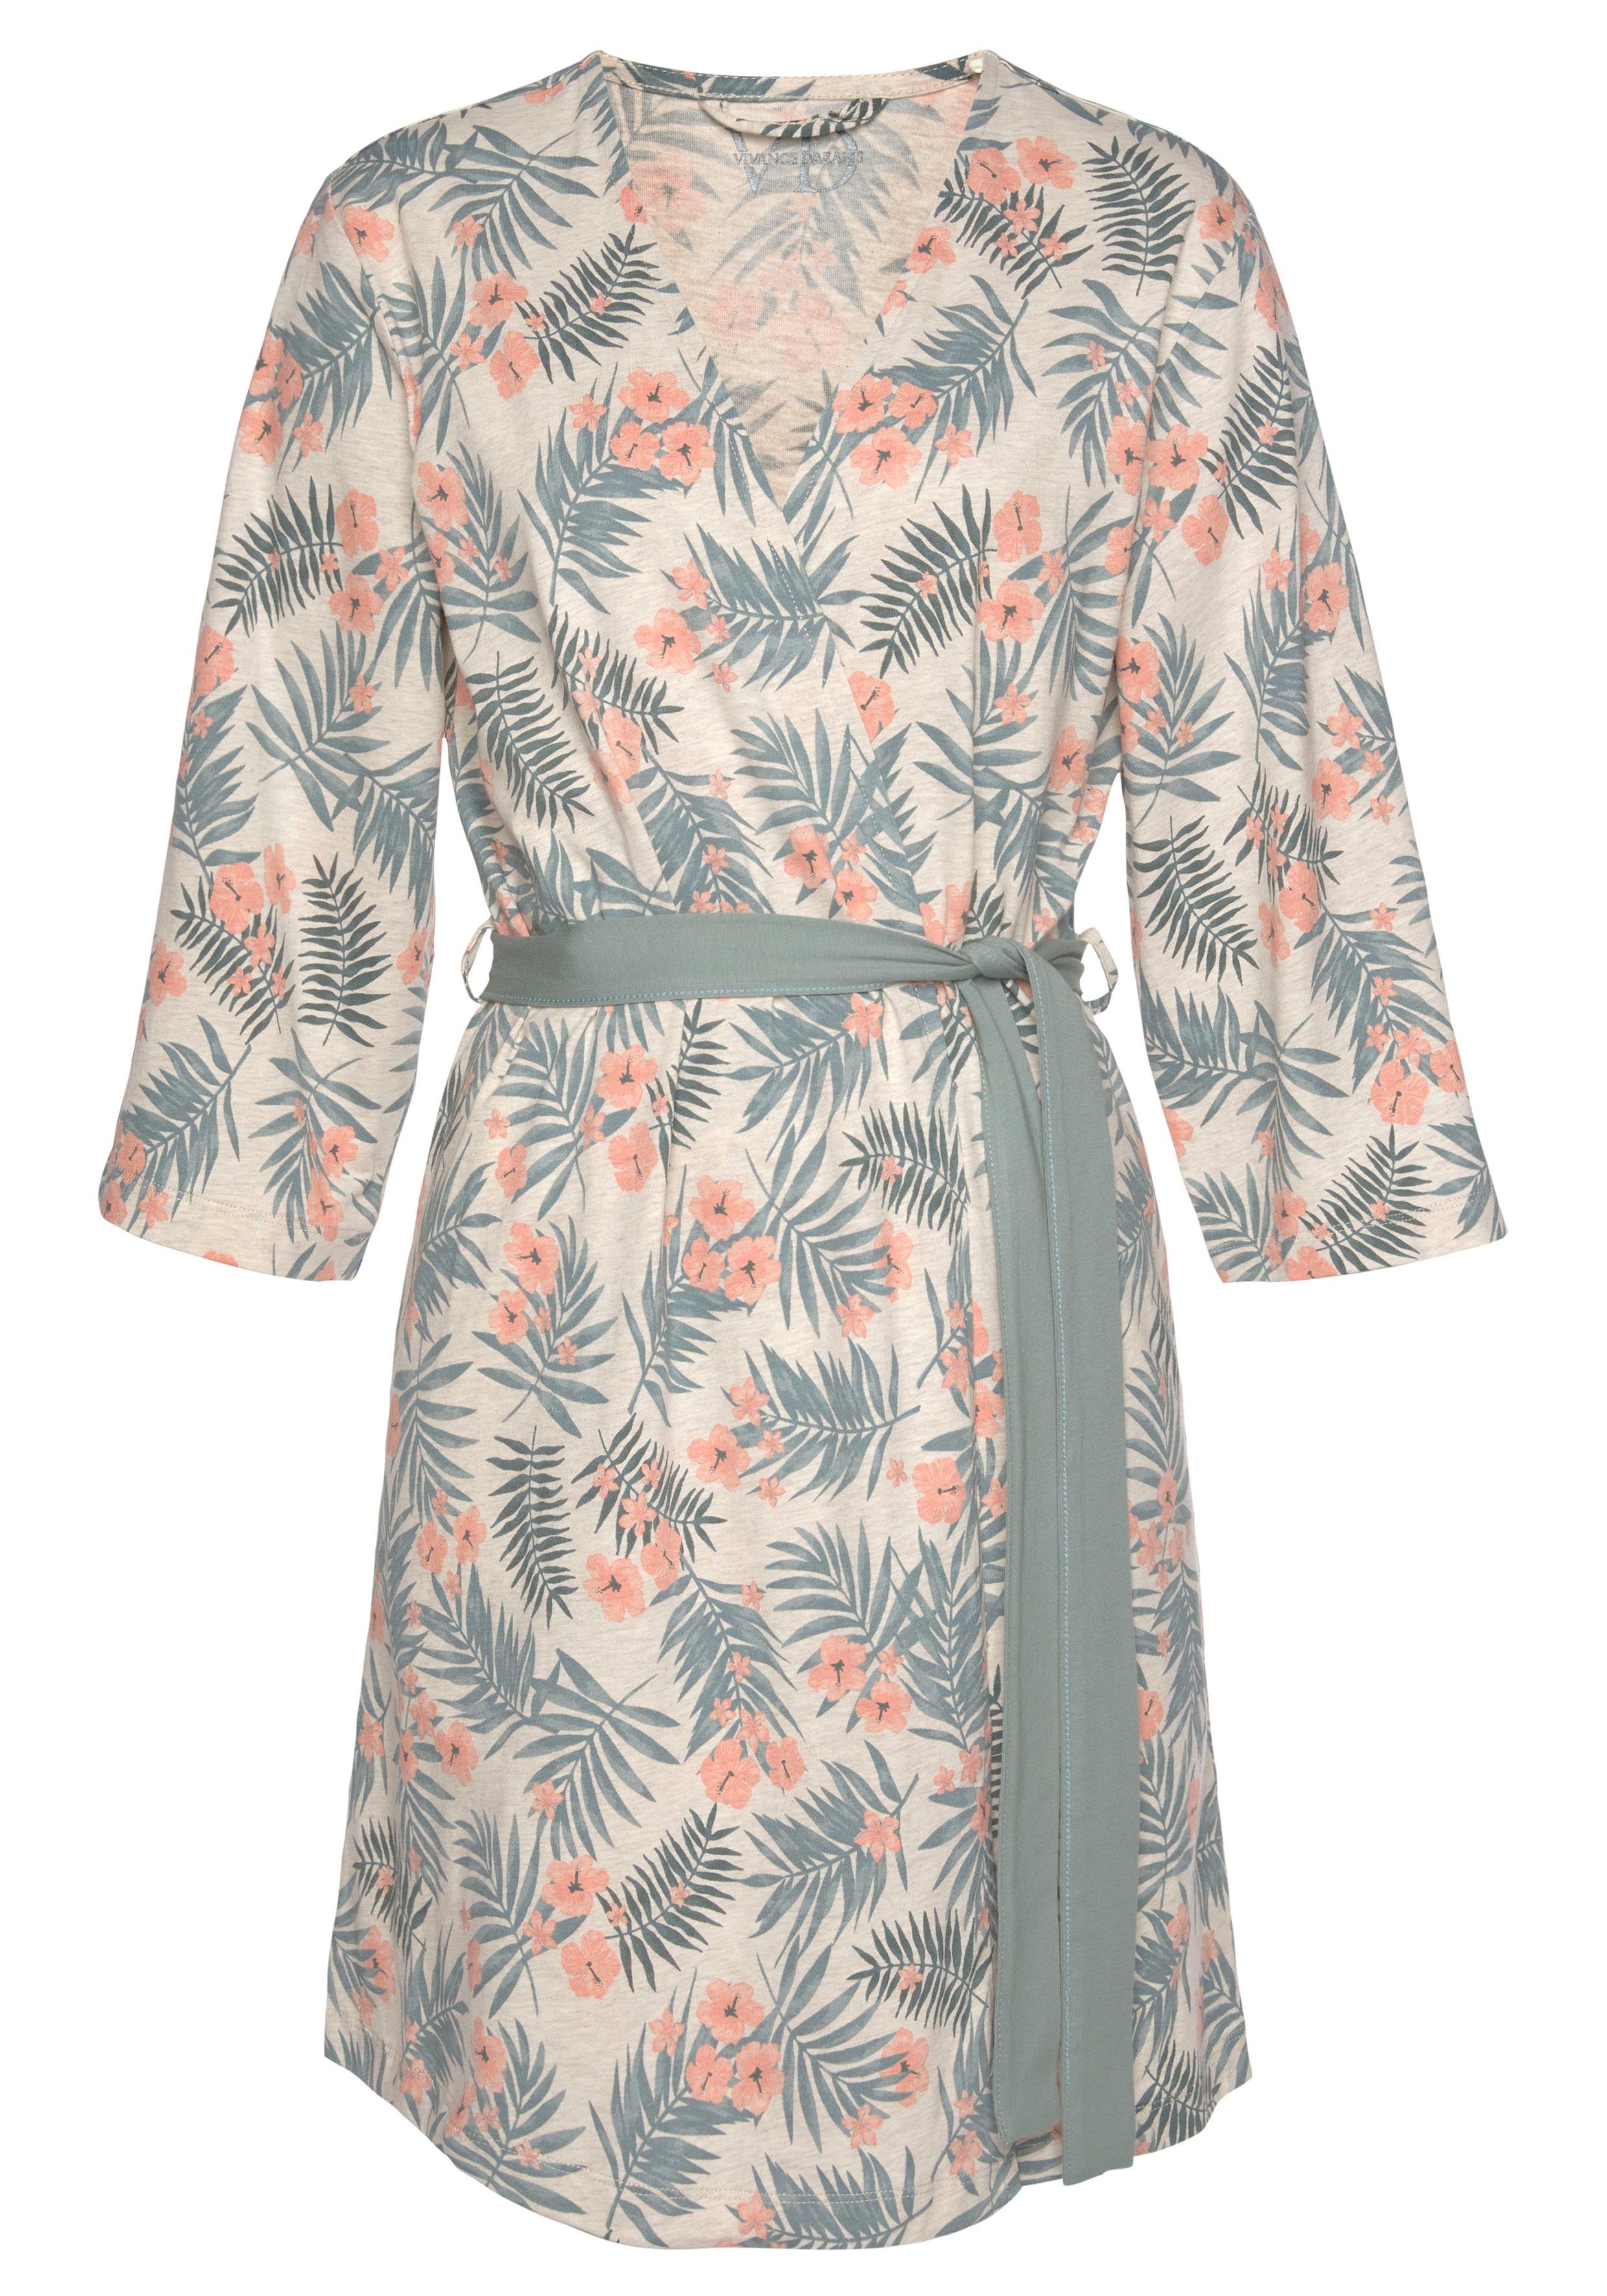 LASCANA Kimono, Kurzform, Baumwolle, sand-grün Allover-Druck und Gürtel, in uni